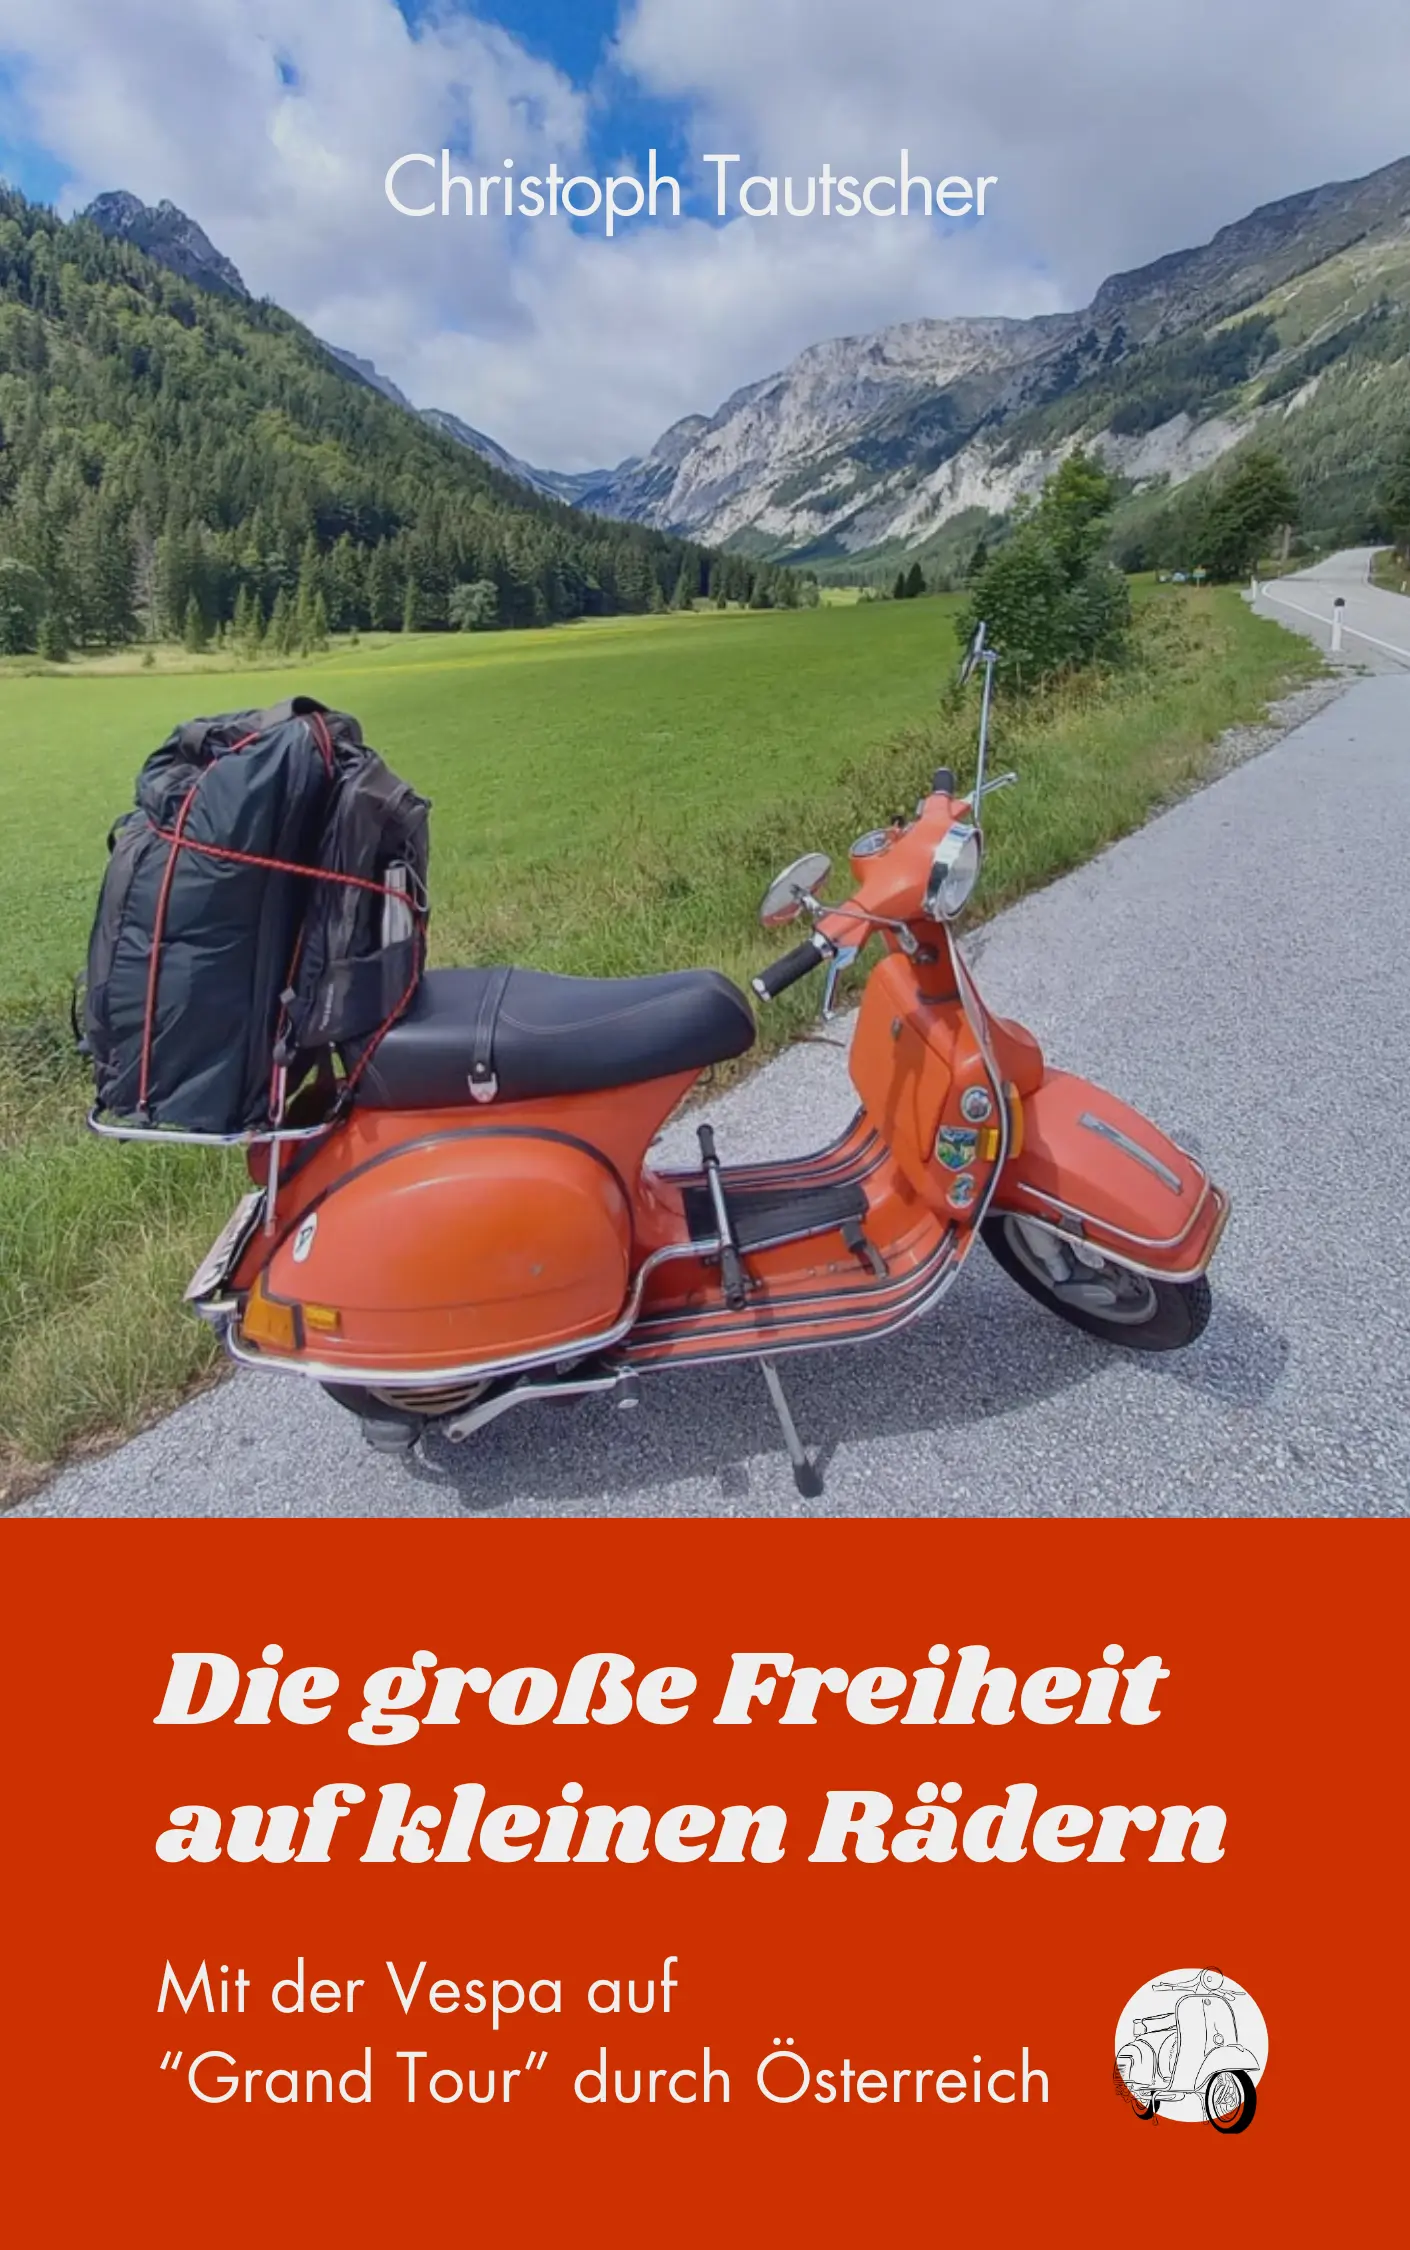 Buchcover "Die große Freiheit auf kleinen Rädern"